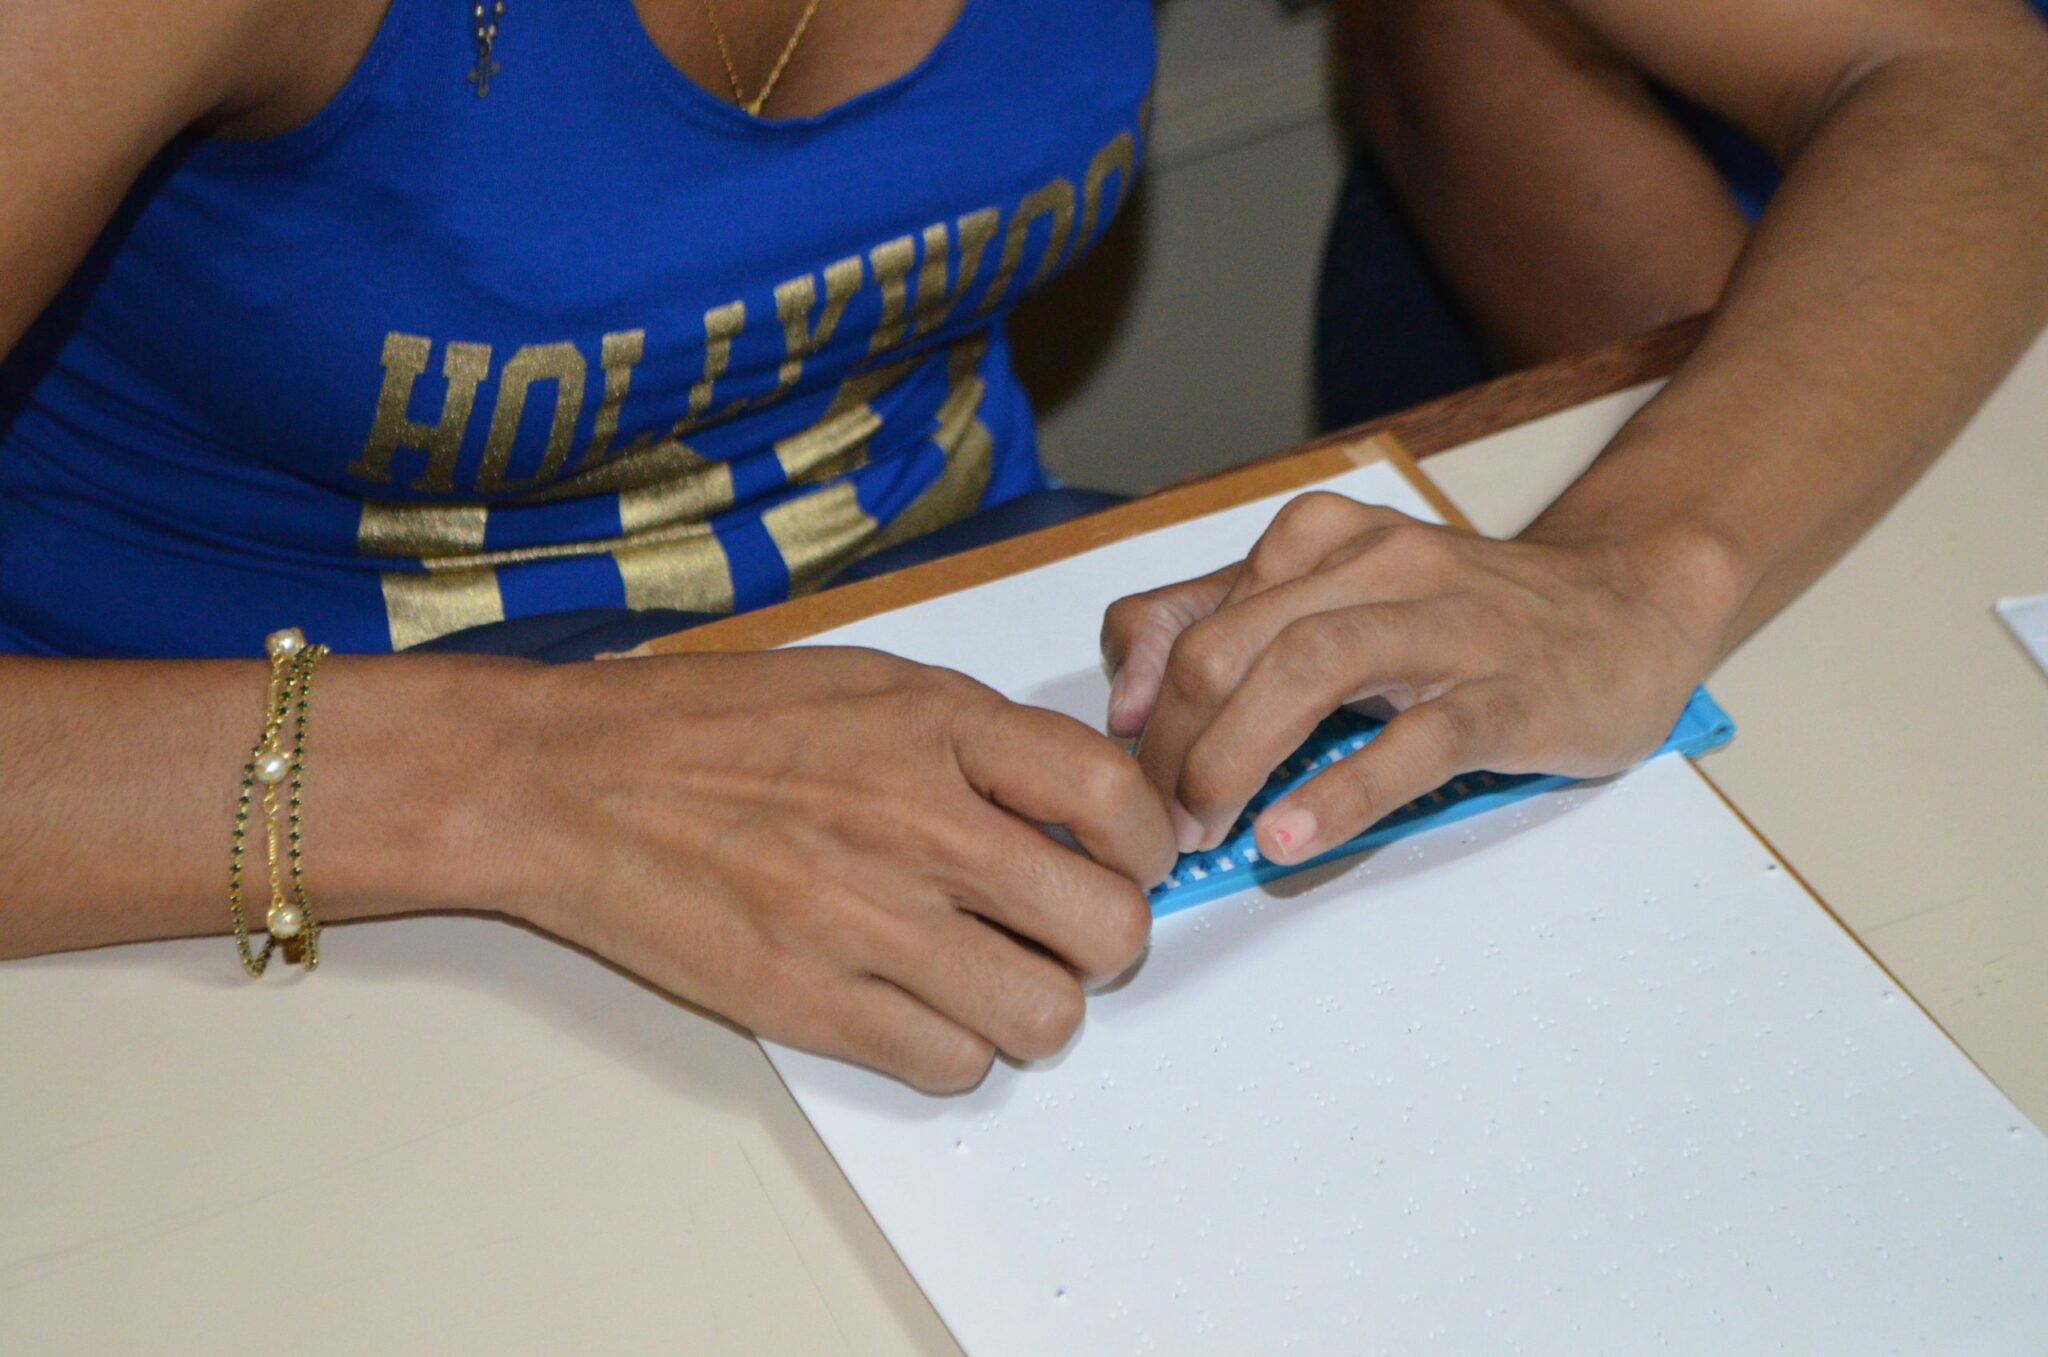 Centro de Apoio Pedagógico para Atendimento às Pessoas com Deficiência Visual abre inscrições para cursos em braille